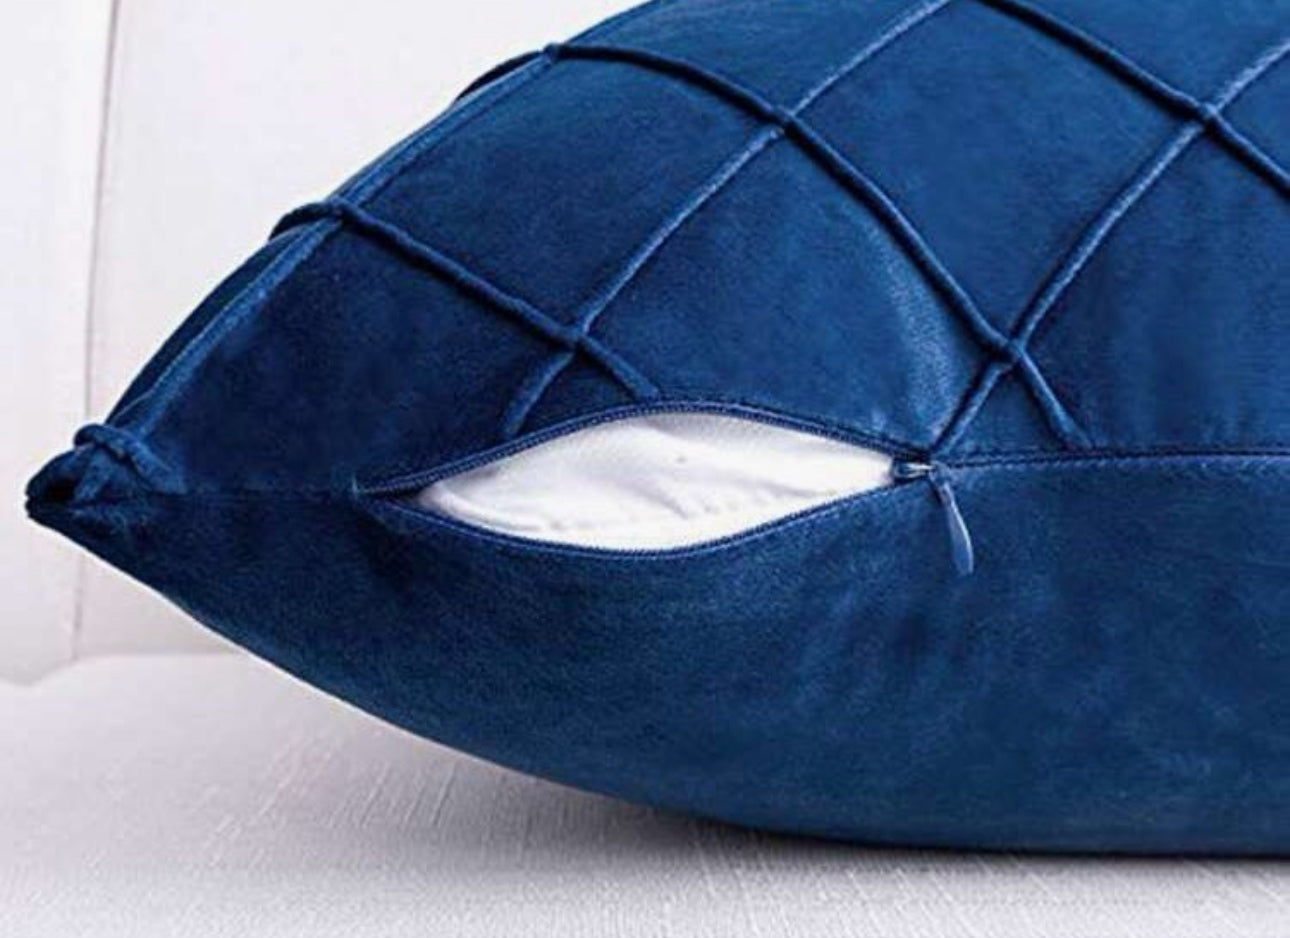 Navy Blue Velvet Throw Pillowcases